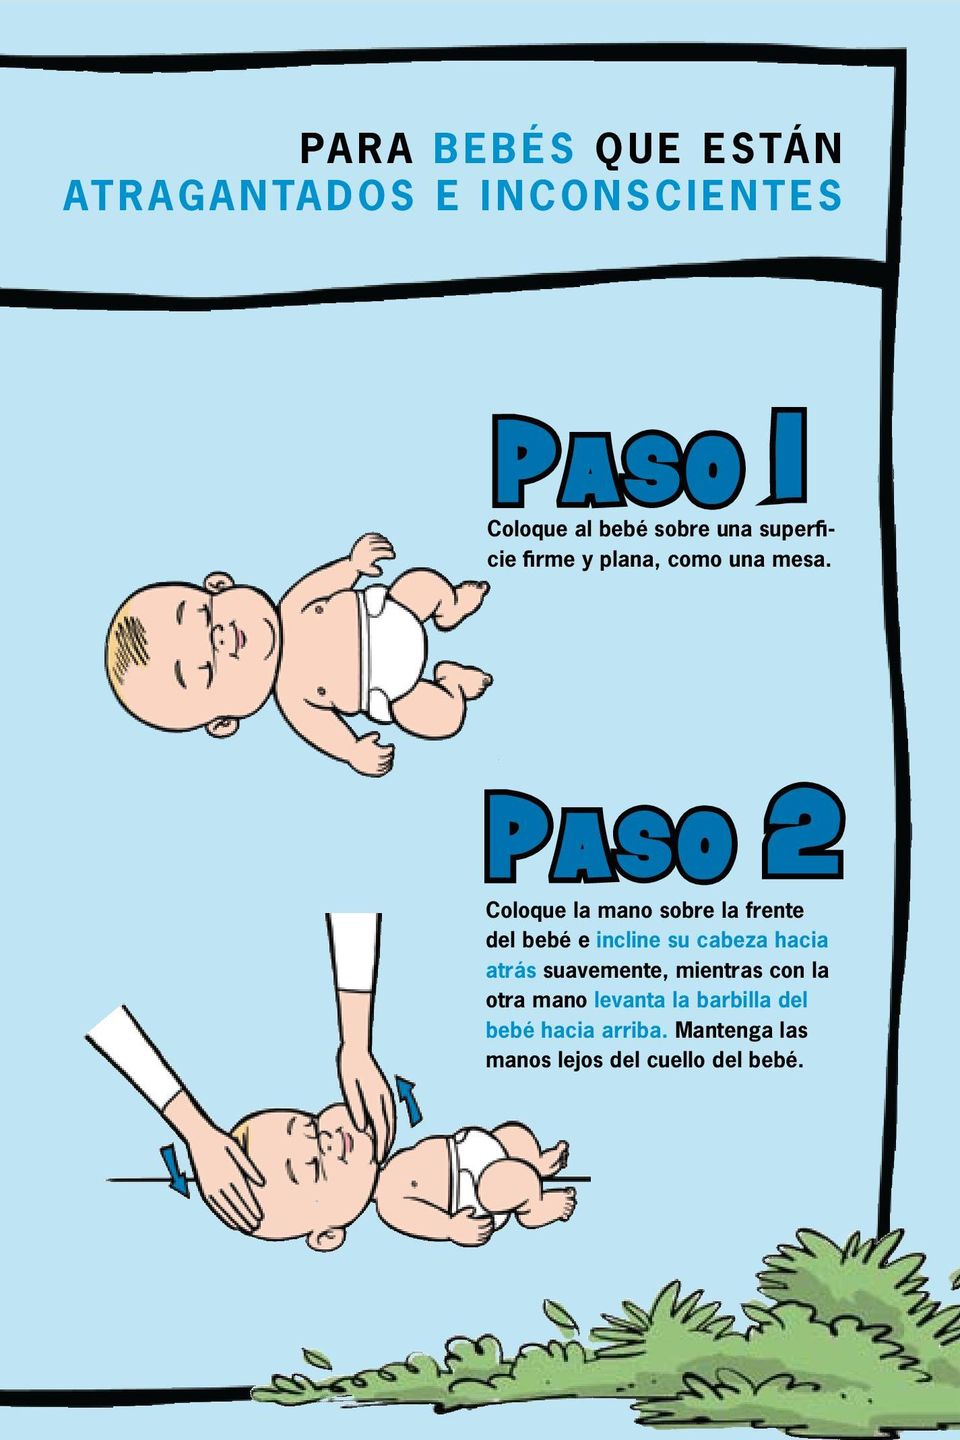 PASO 2 Coloque la mano sobre la frente del bebé e incline su cabeza hacia atrás